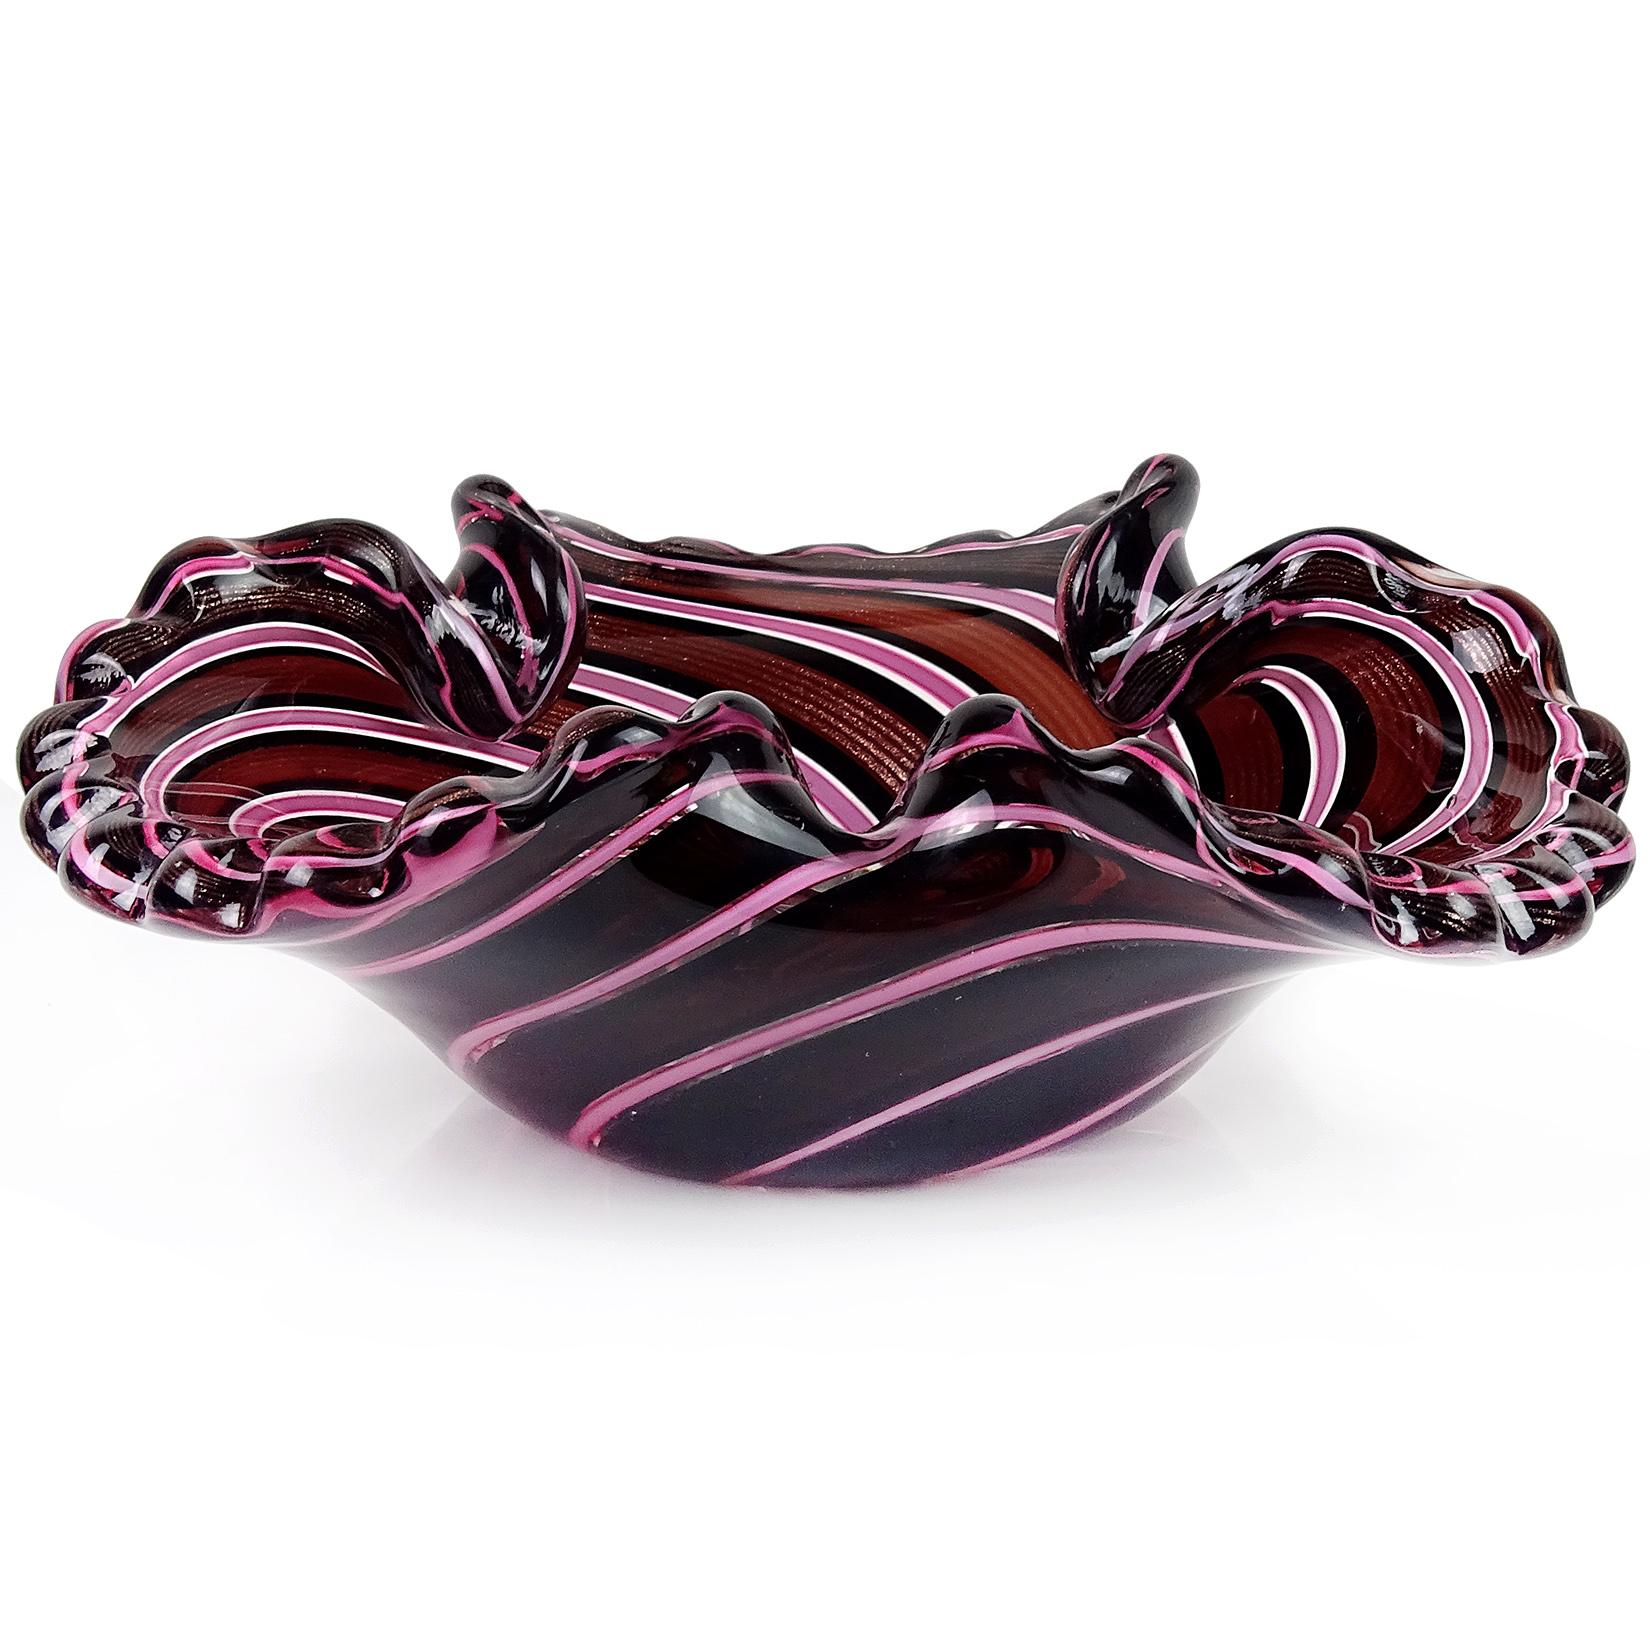 Nur noch 1 übrig! Schöne Vintage Murano rosa, schwarz und dunklen Wein Farbe mit Kupfer Aventurin Bänder italienische Kunst Glas dekorative Schale. Sie hat einen gewellten Rand mit drei Falten entlang des Randes. Die Schale trägt noch das